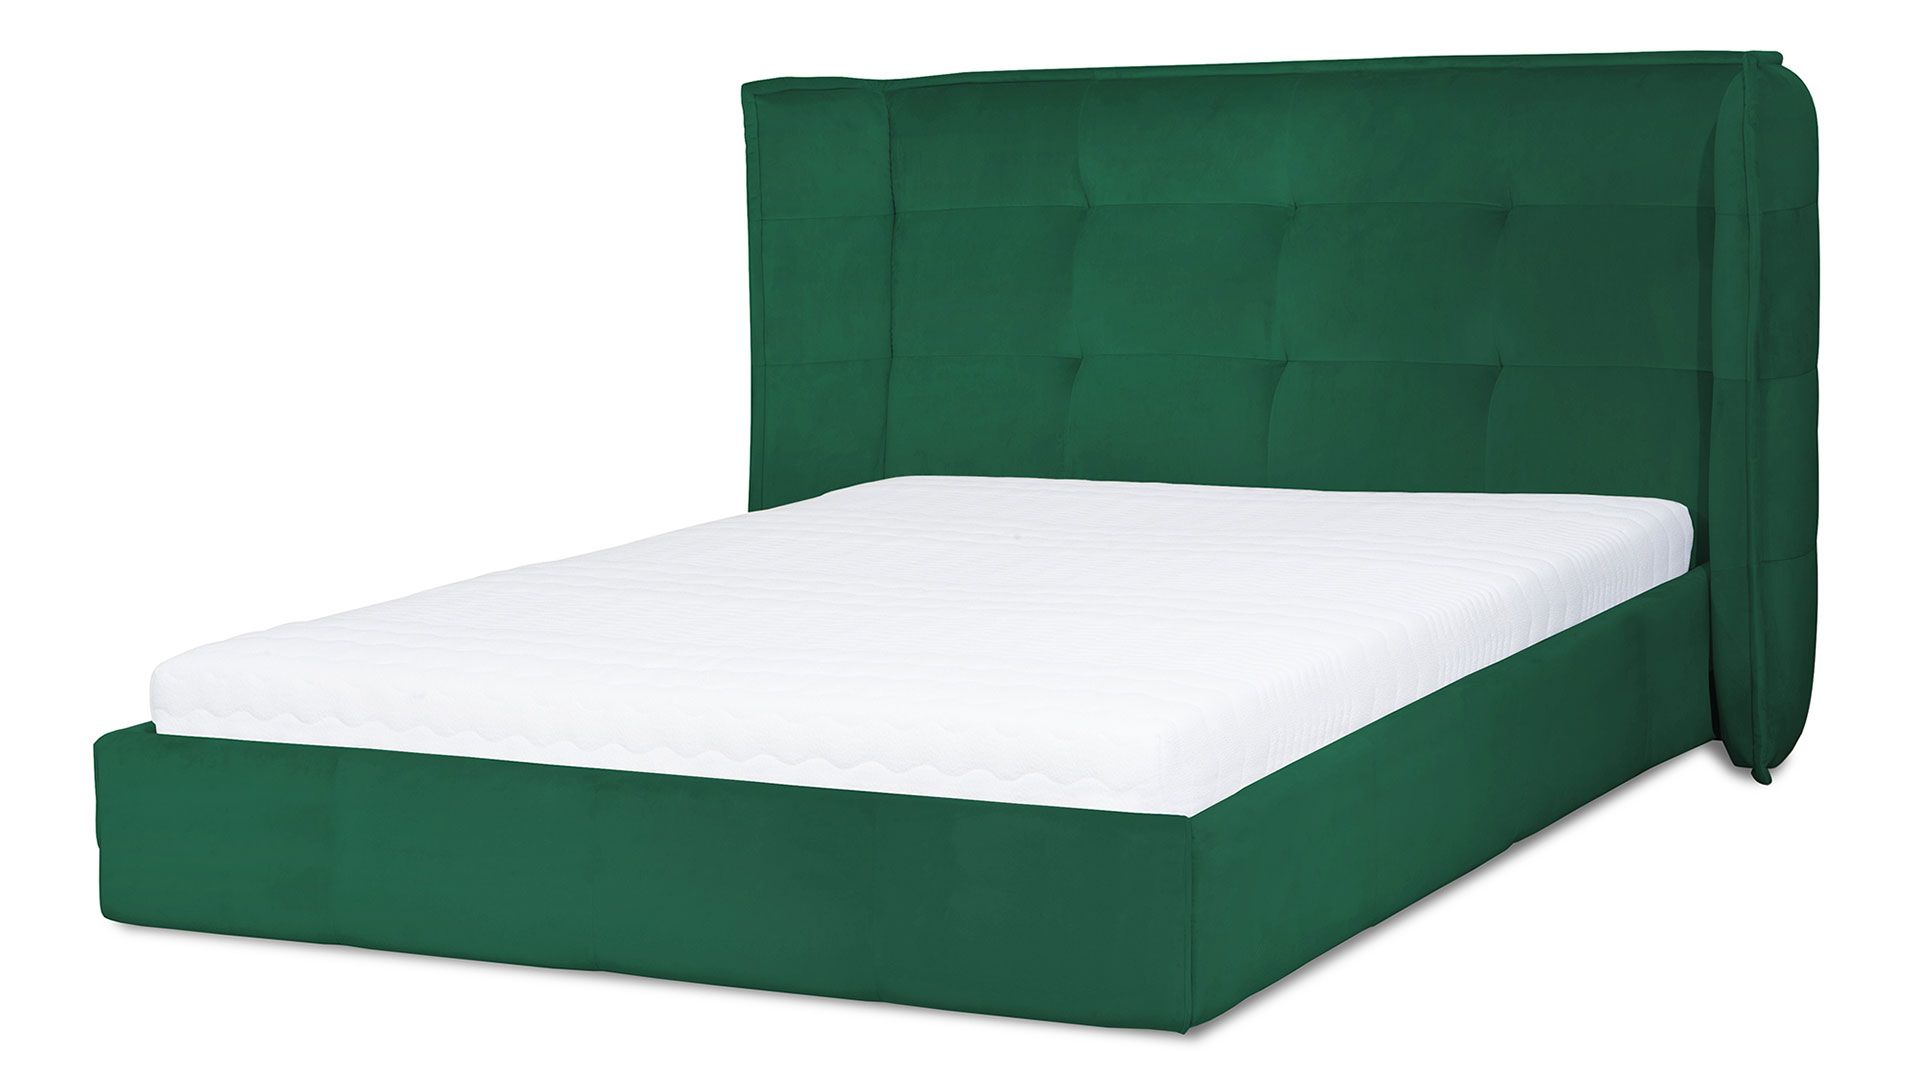 Tapicerowane łóżko Manhattan 160 cm, wyposażone w pojemnik. Cena: od 3900 zł. Sprzedaż: Wajnert.pl